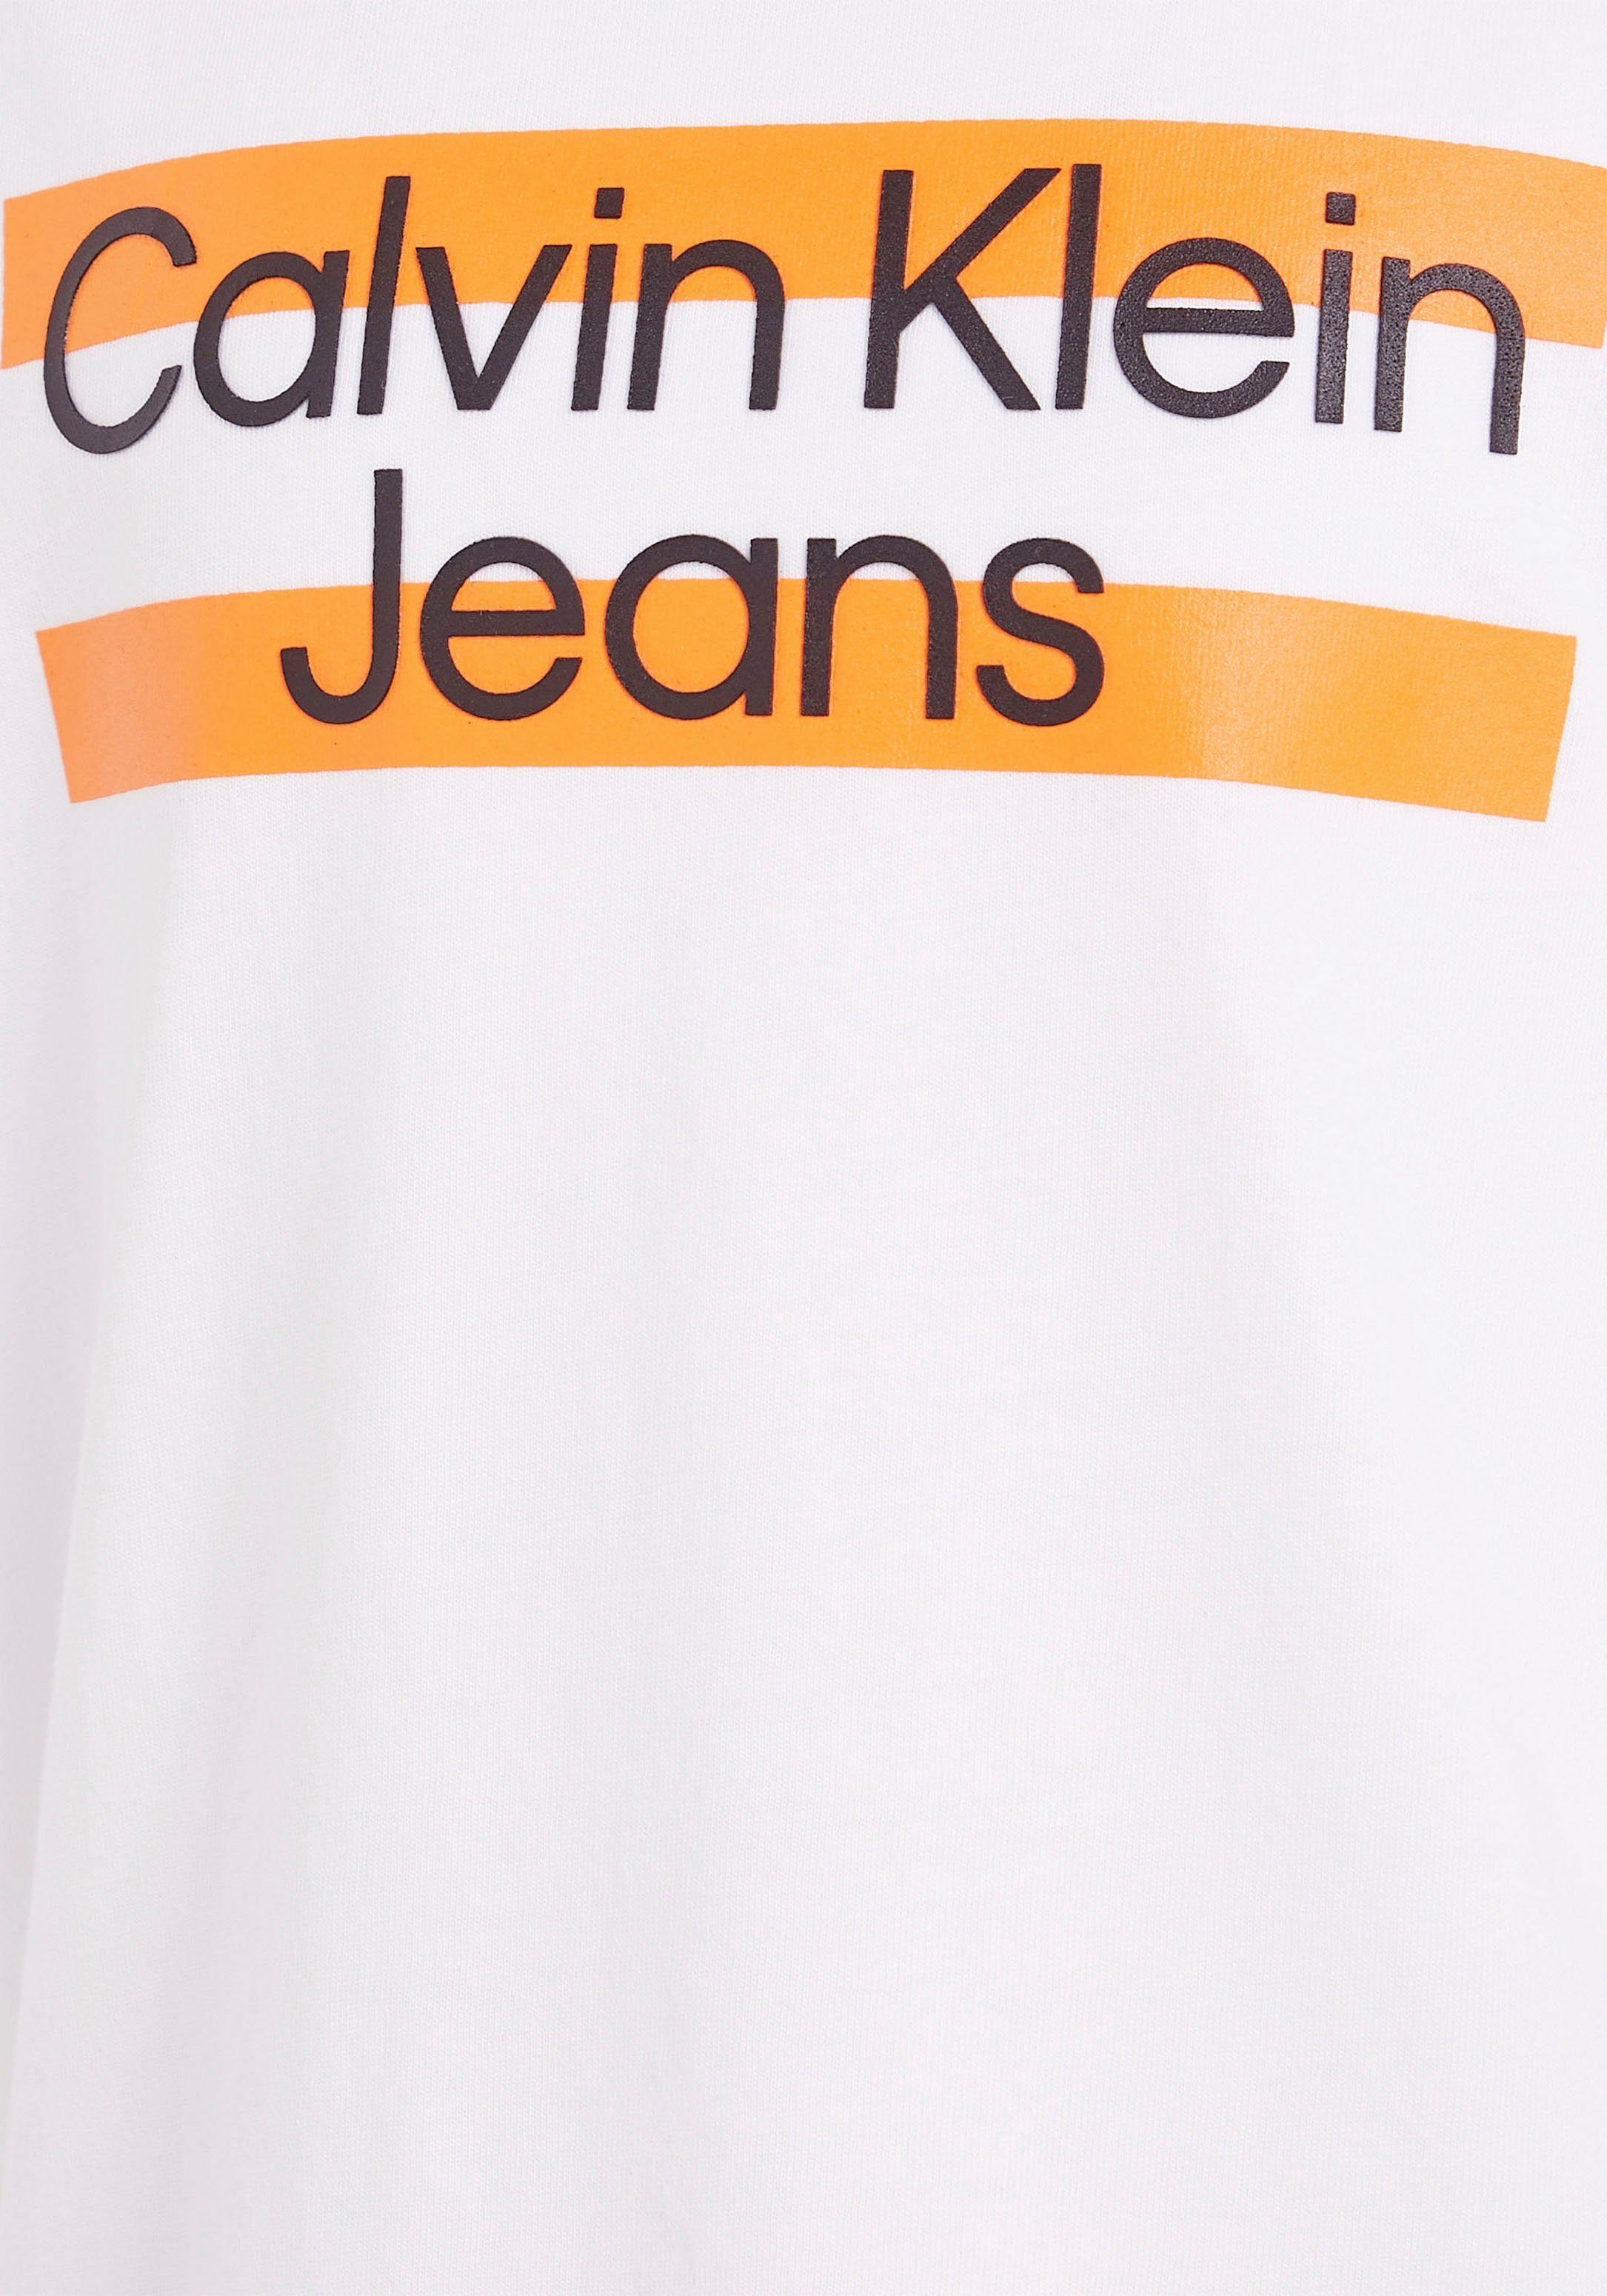 Calvin Klein Jeans Brust Logodruck T-Shirt Calvin Klein auf weiß mit der